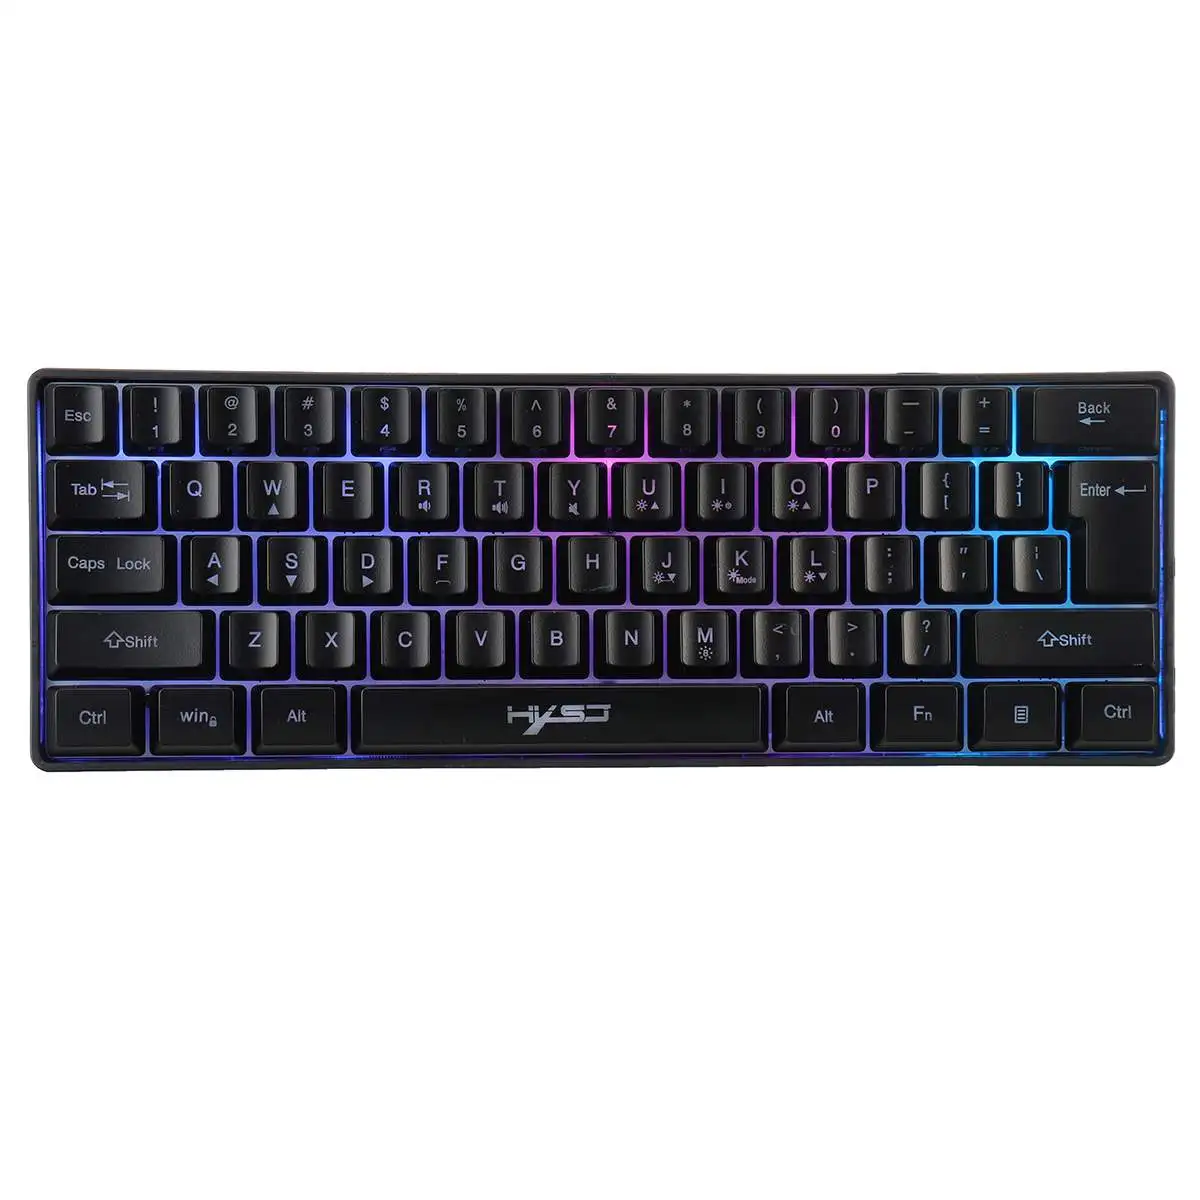 

Игровая RGB клавиатура HXSJ V700 с 61 клавишами для геймеров, USB клавиатура с подсветкой и множеством комбинаций клавиш быстрого доступа для PUBG Home